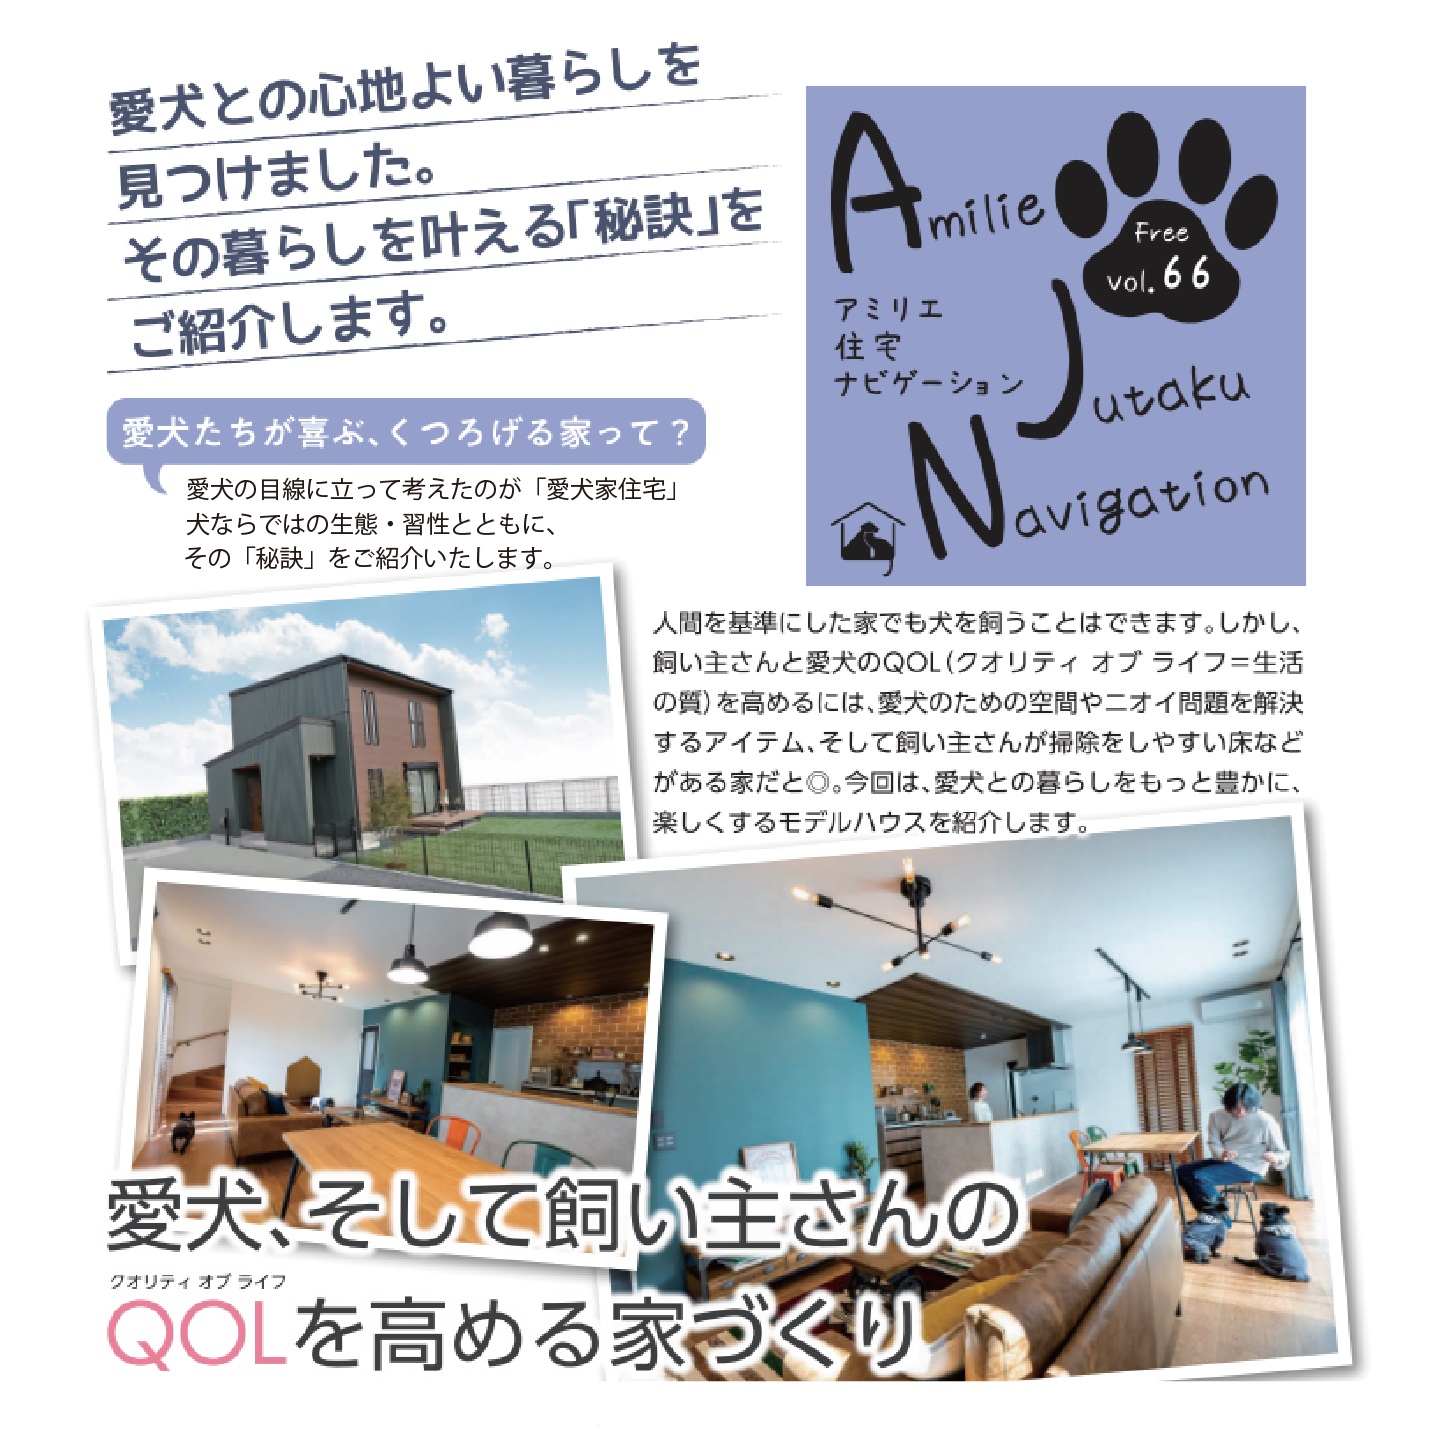 【AJN Vol.66】愛犬、そして飼い主さんのQOLを高める家づくり